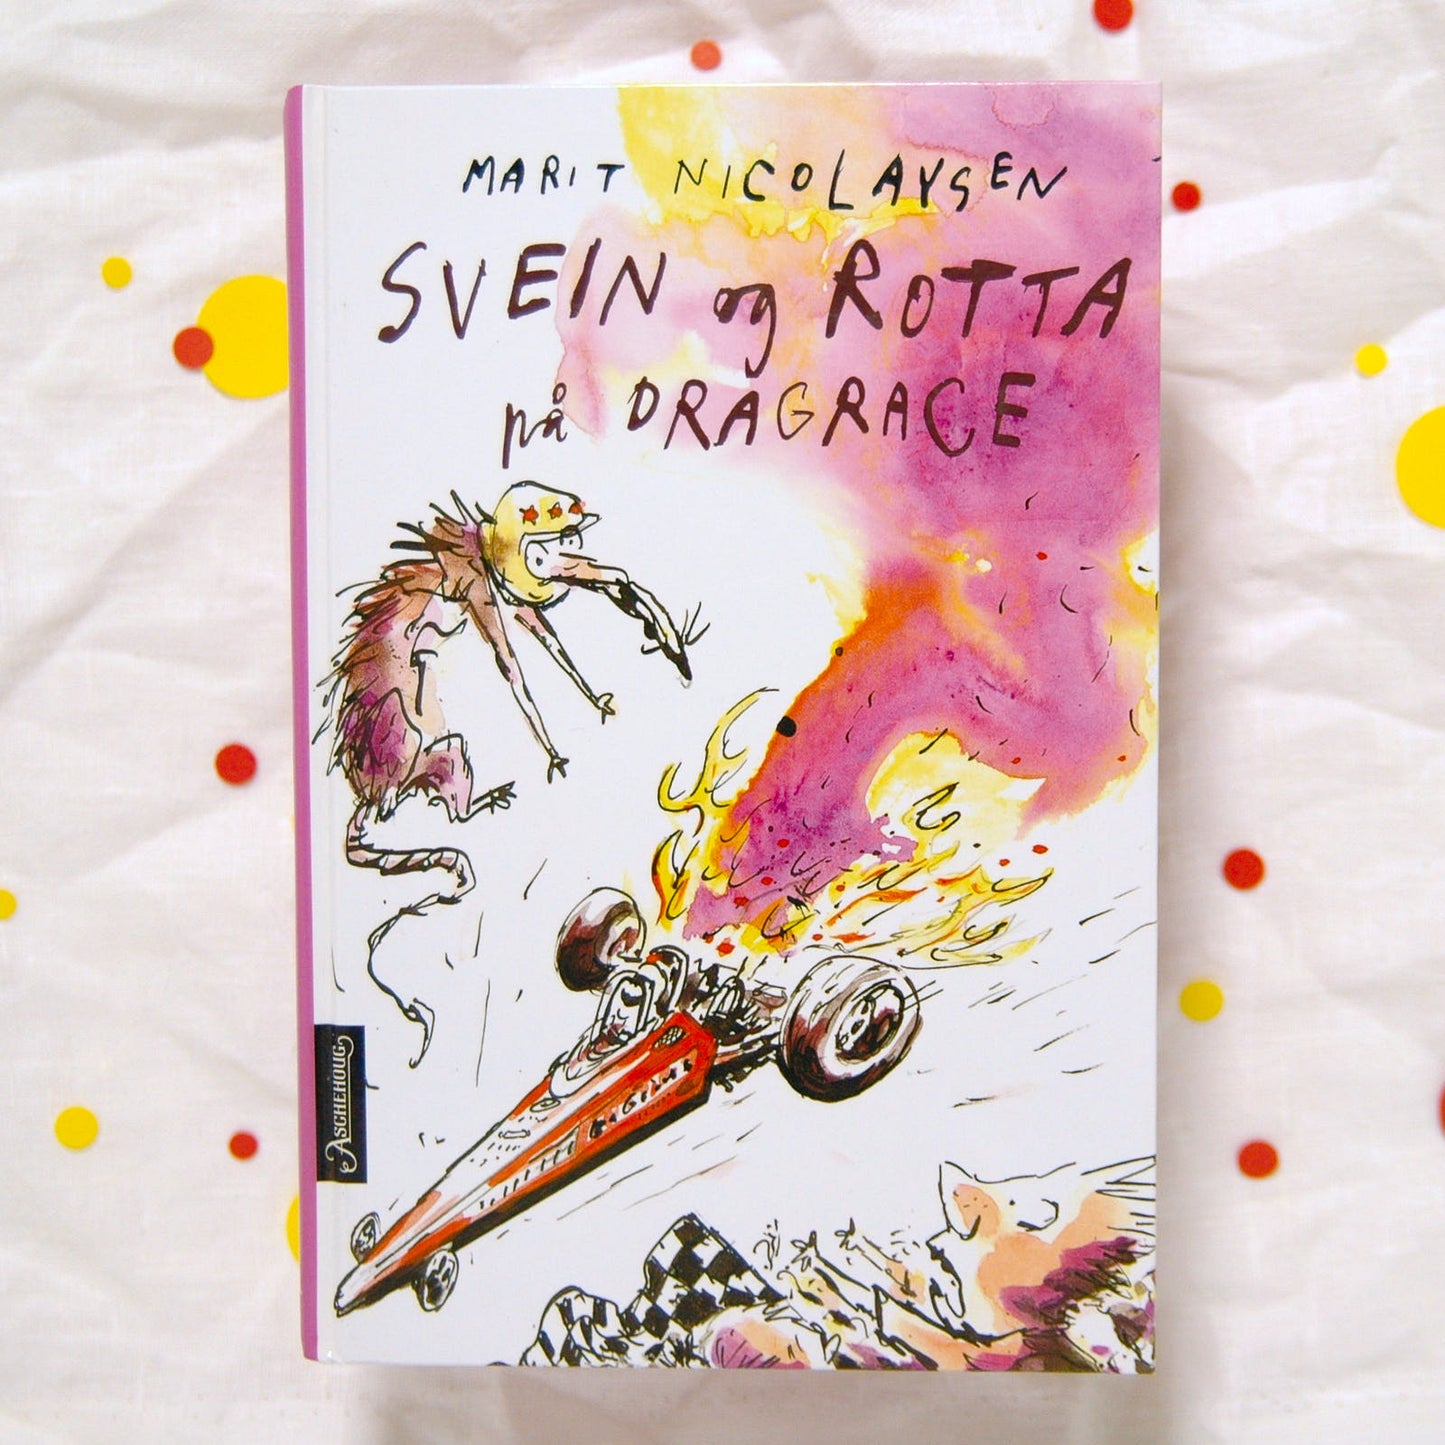 Svein og rotta på dragrace av Marit Nicolaysen